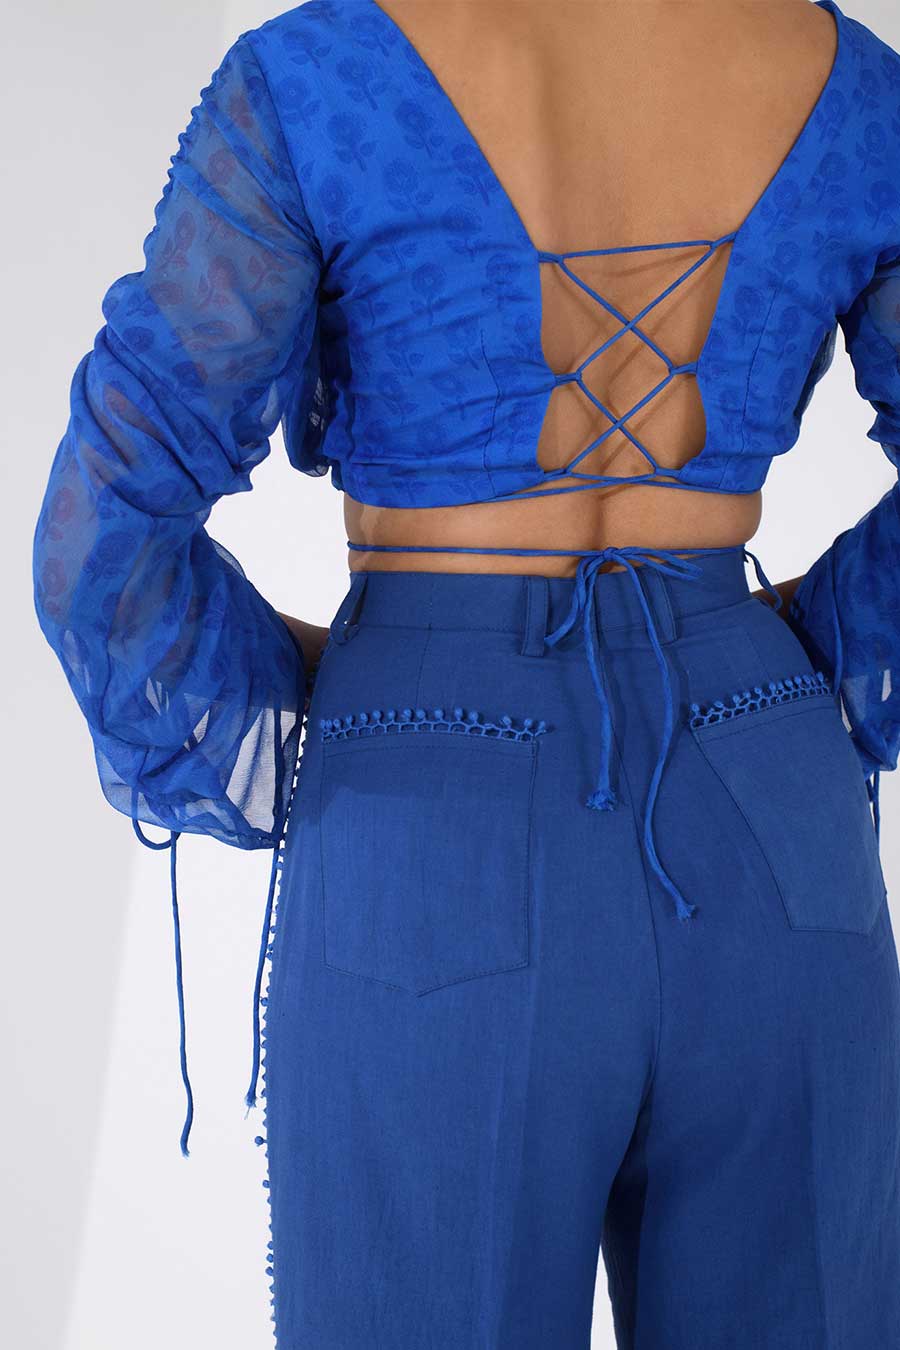 IVY - Blue Printed Top & Pants Co-Ord Set